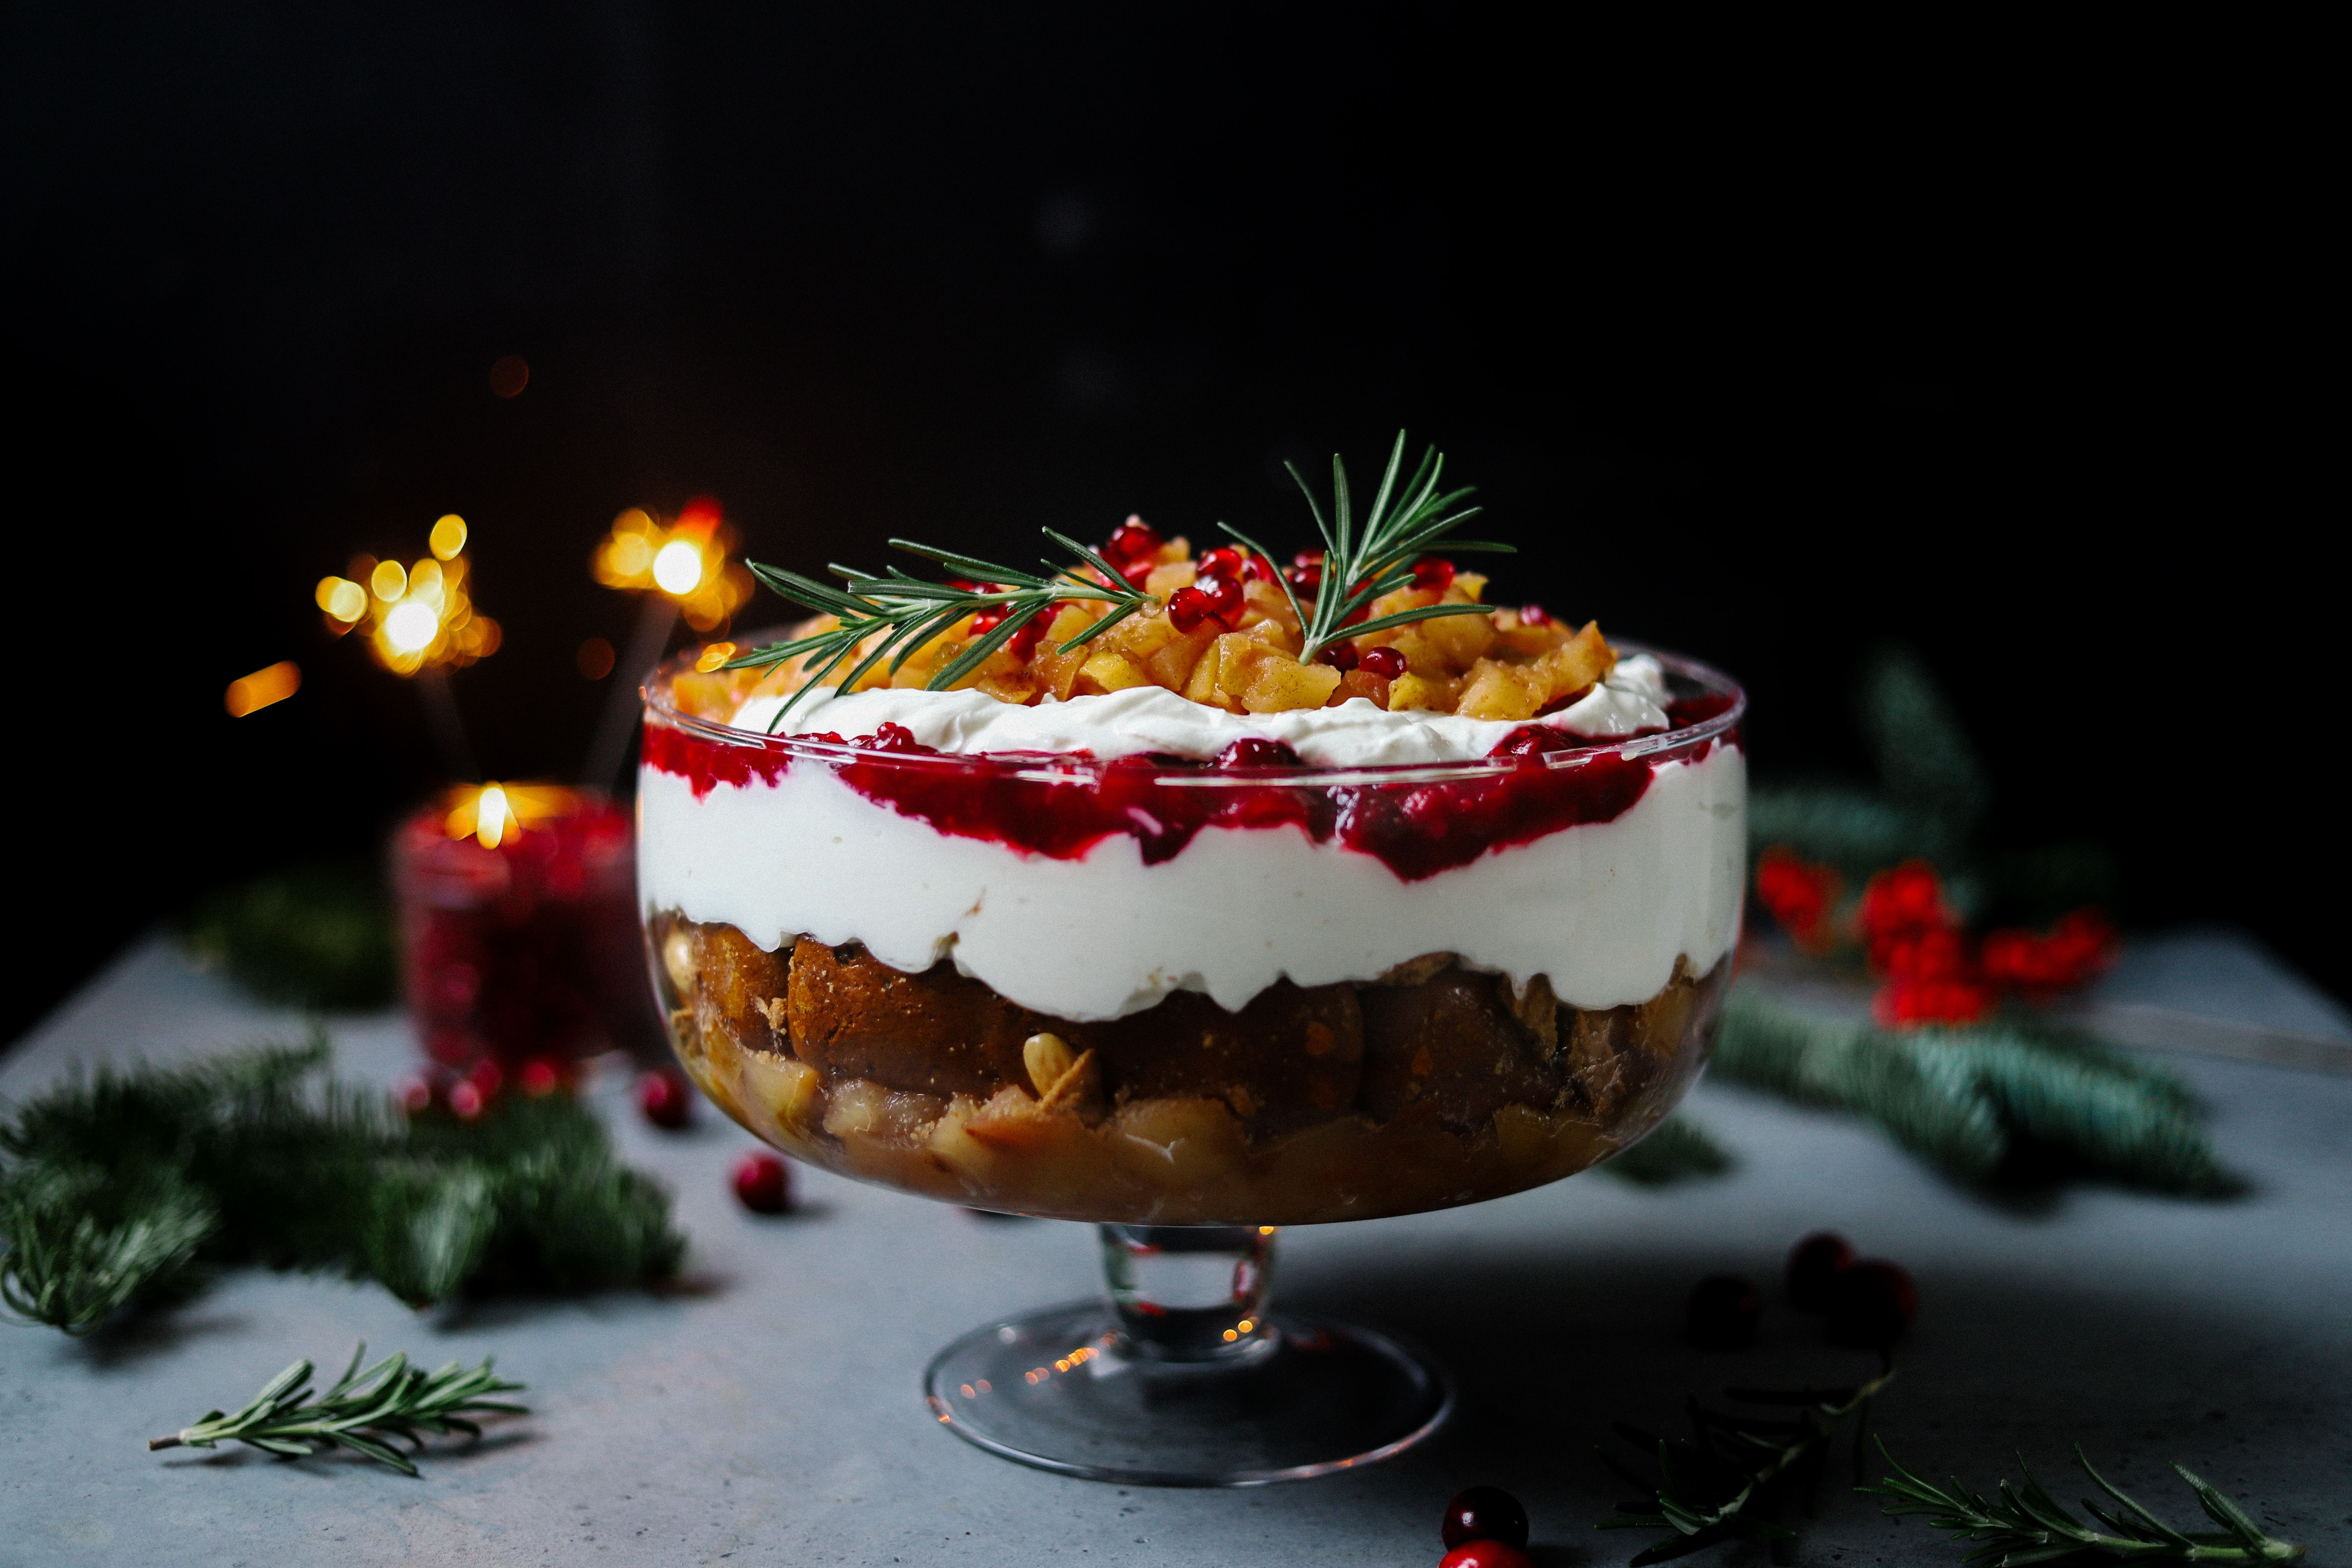 Weihnachtsmenü Dessert vegan: Apfel-Cranberry-Trifle mit Lebkuchen